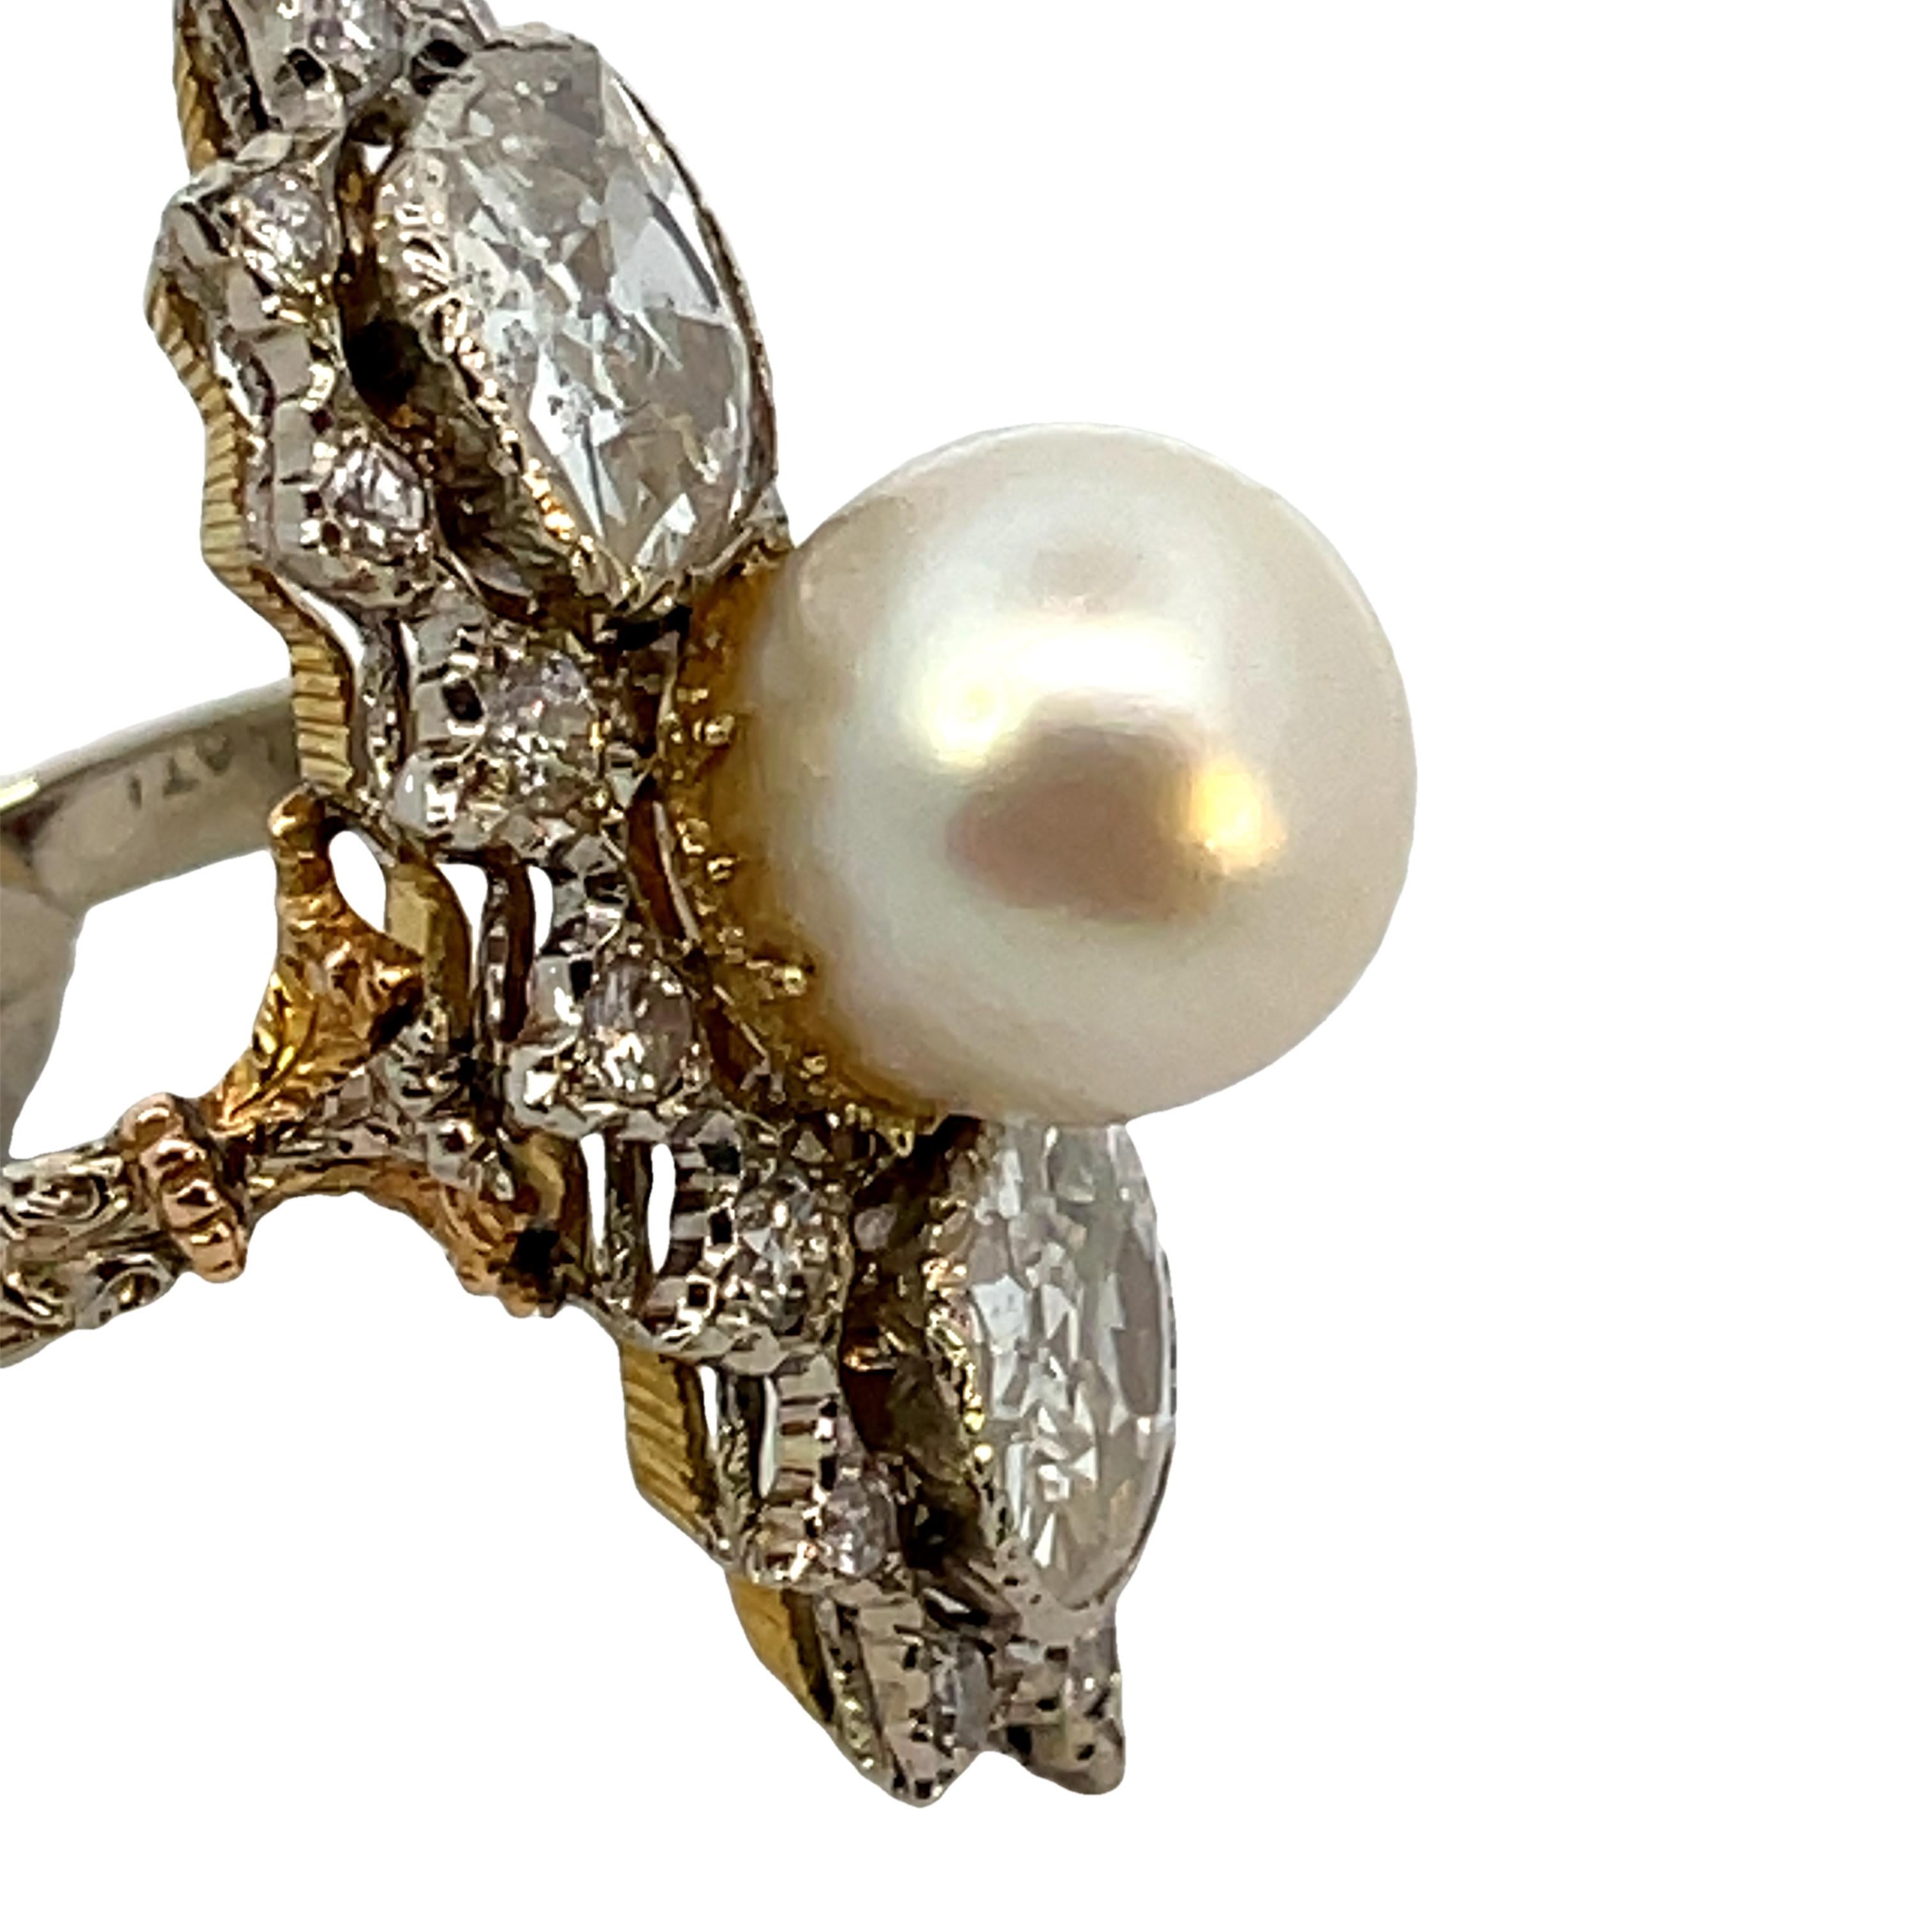 Exquise bague en diamant et perle de Mario Buccellati, comprenant deux diamants anciens de taille coussin pesant environ 2,20cts chacun et une perle de culture.
Boîte d'origine Mario Buccellati incluse